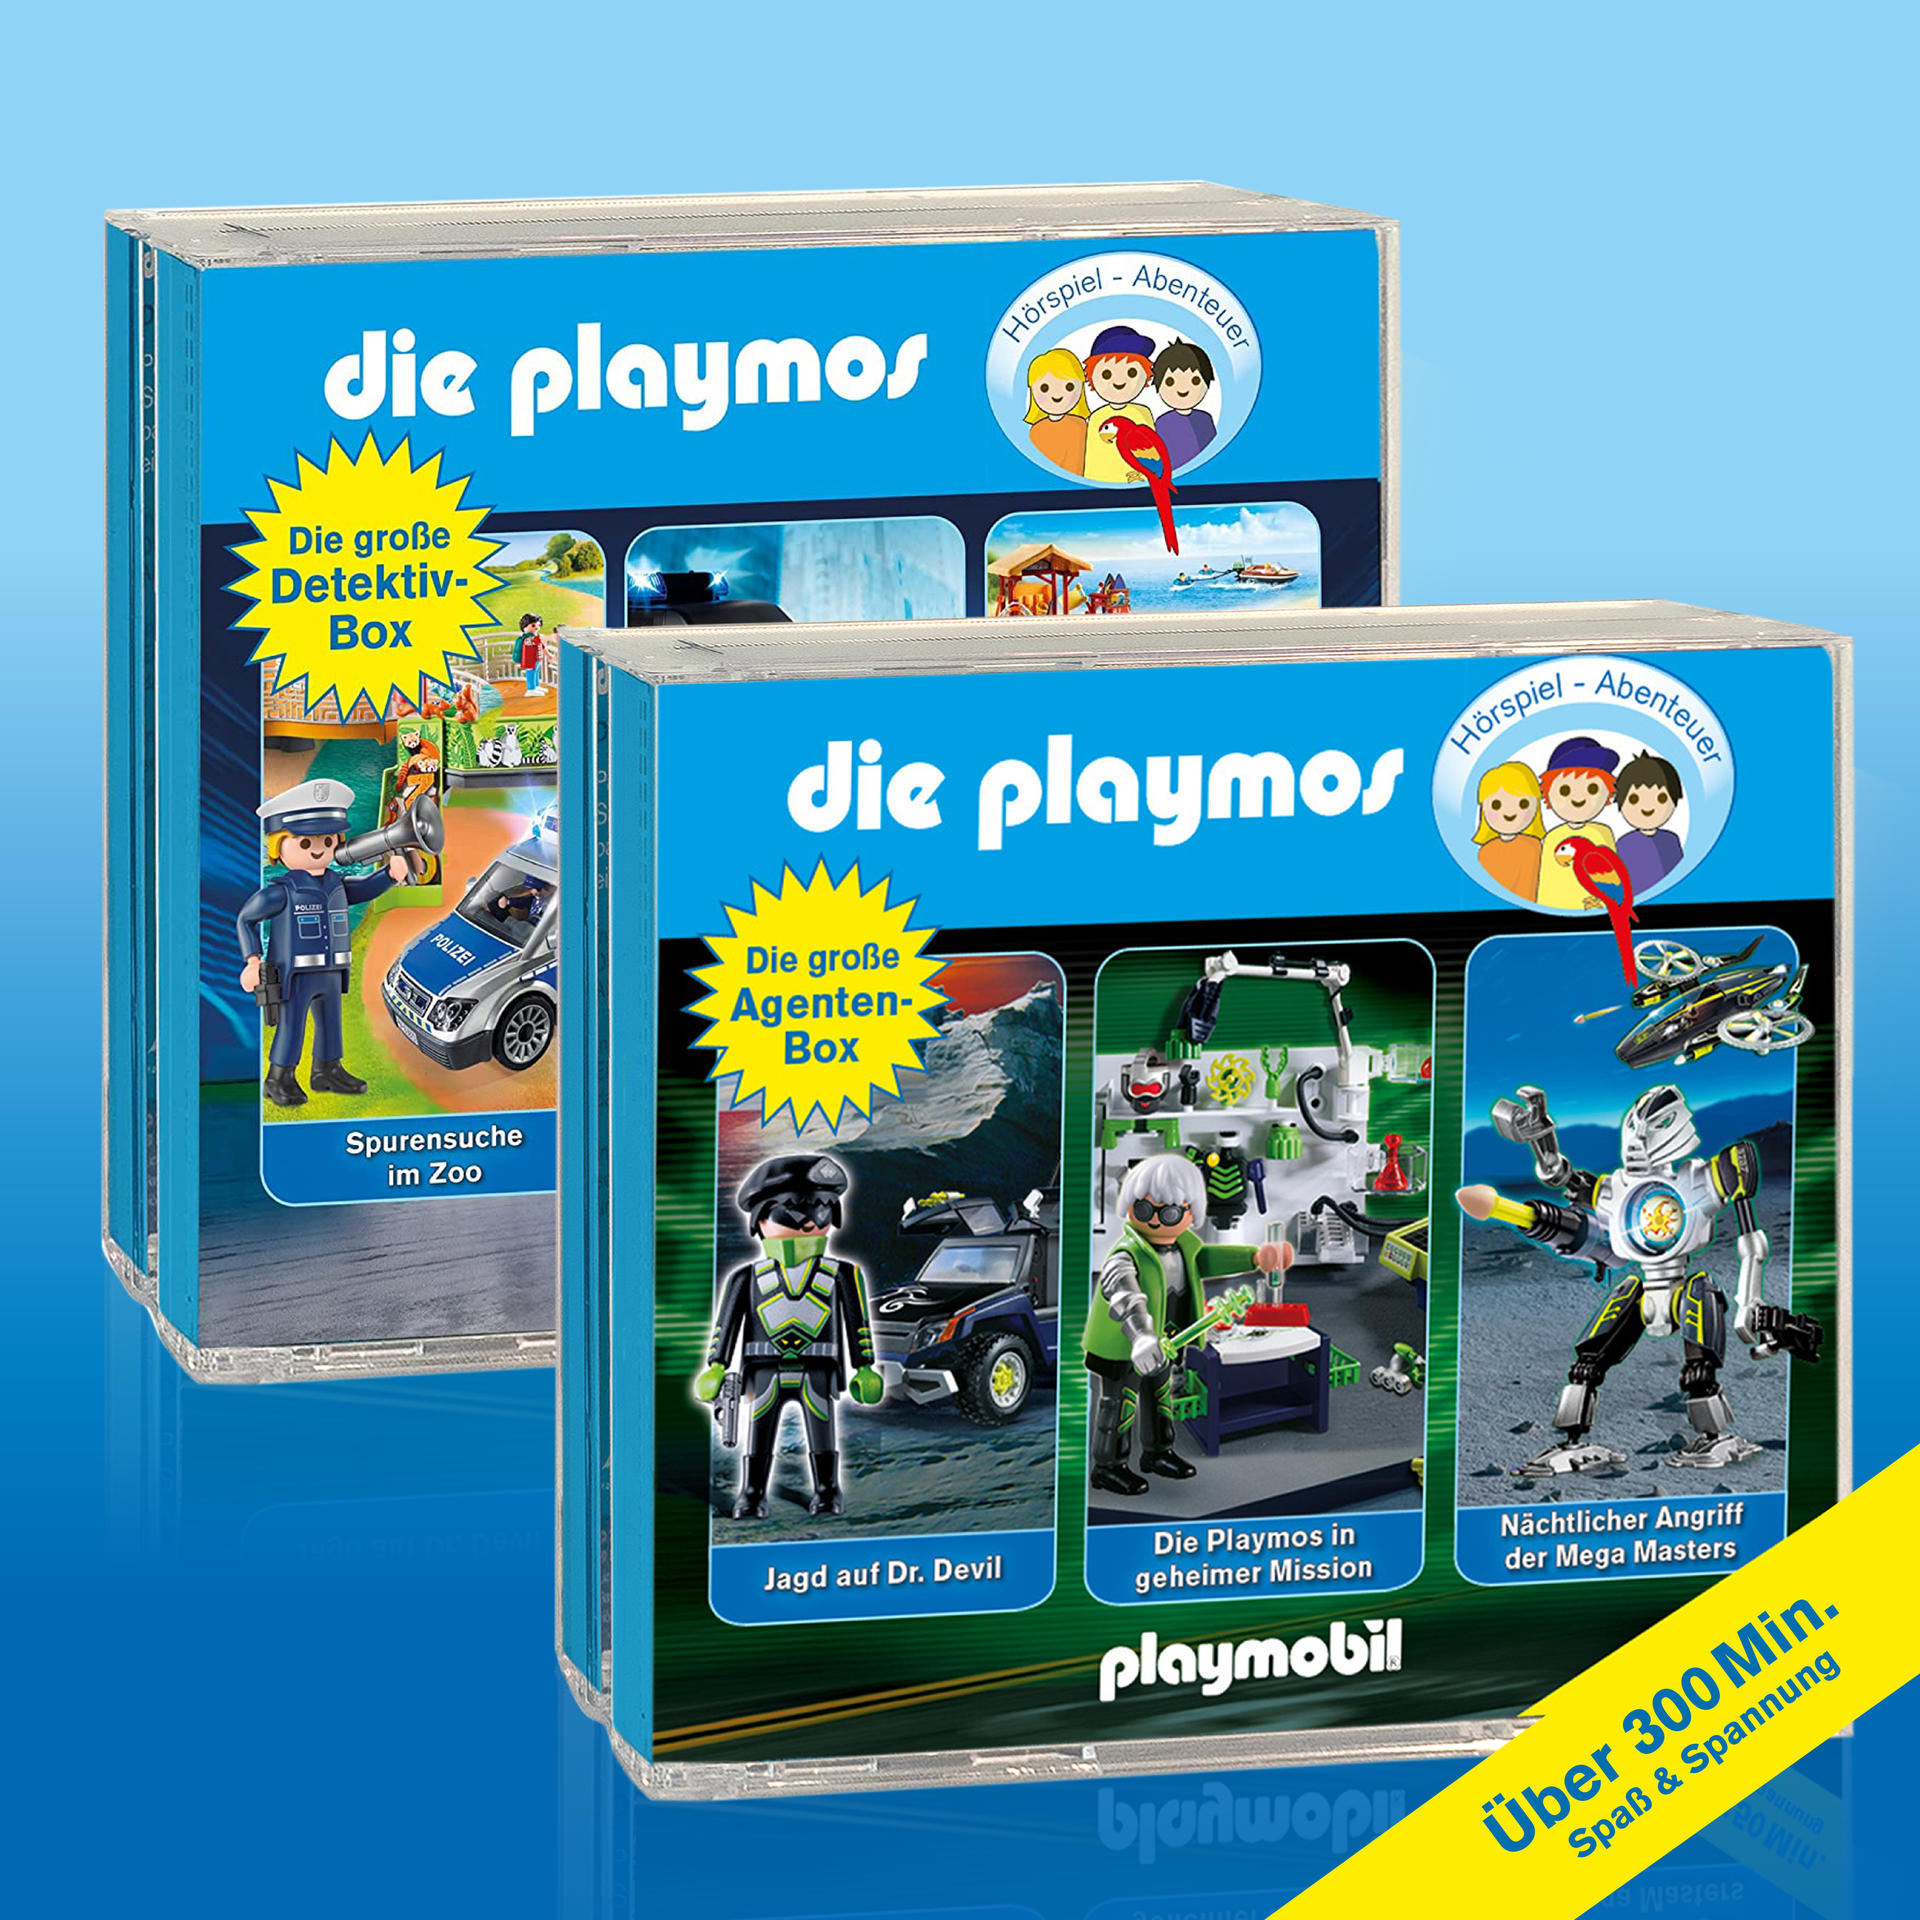 Playmos-Die Playmos (CD) Die Agenten-u.Detektiv-Box Die - - große